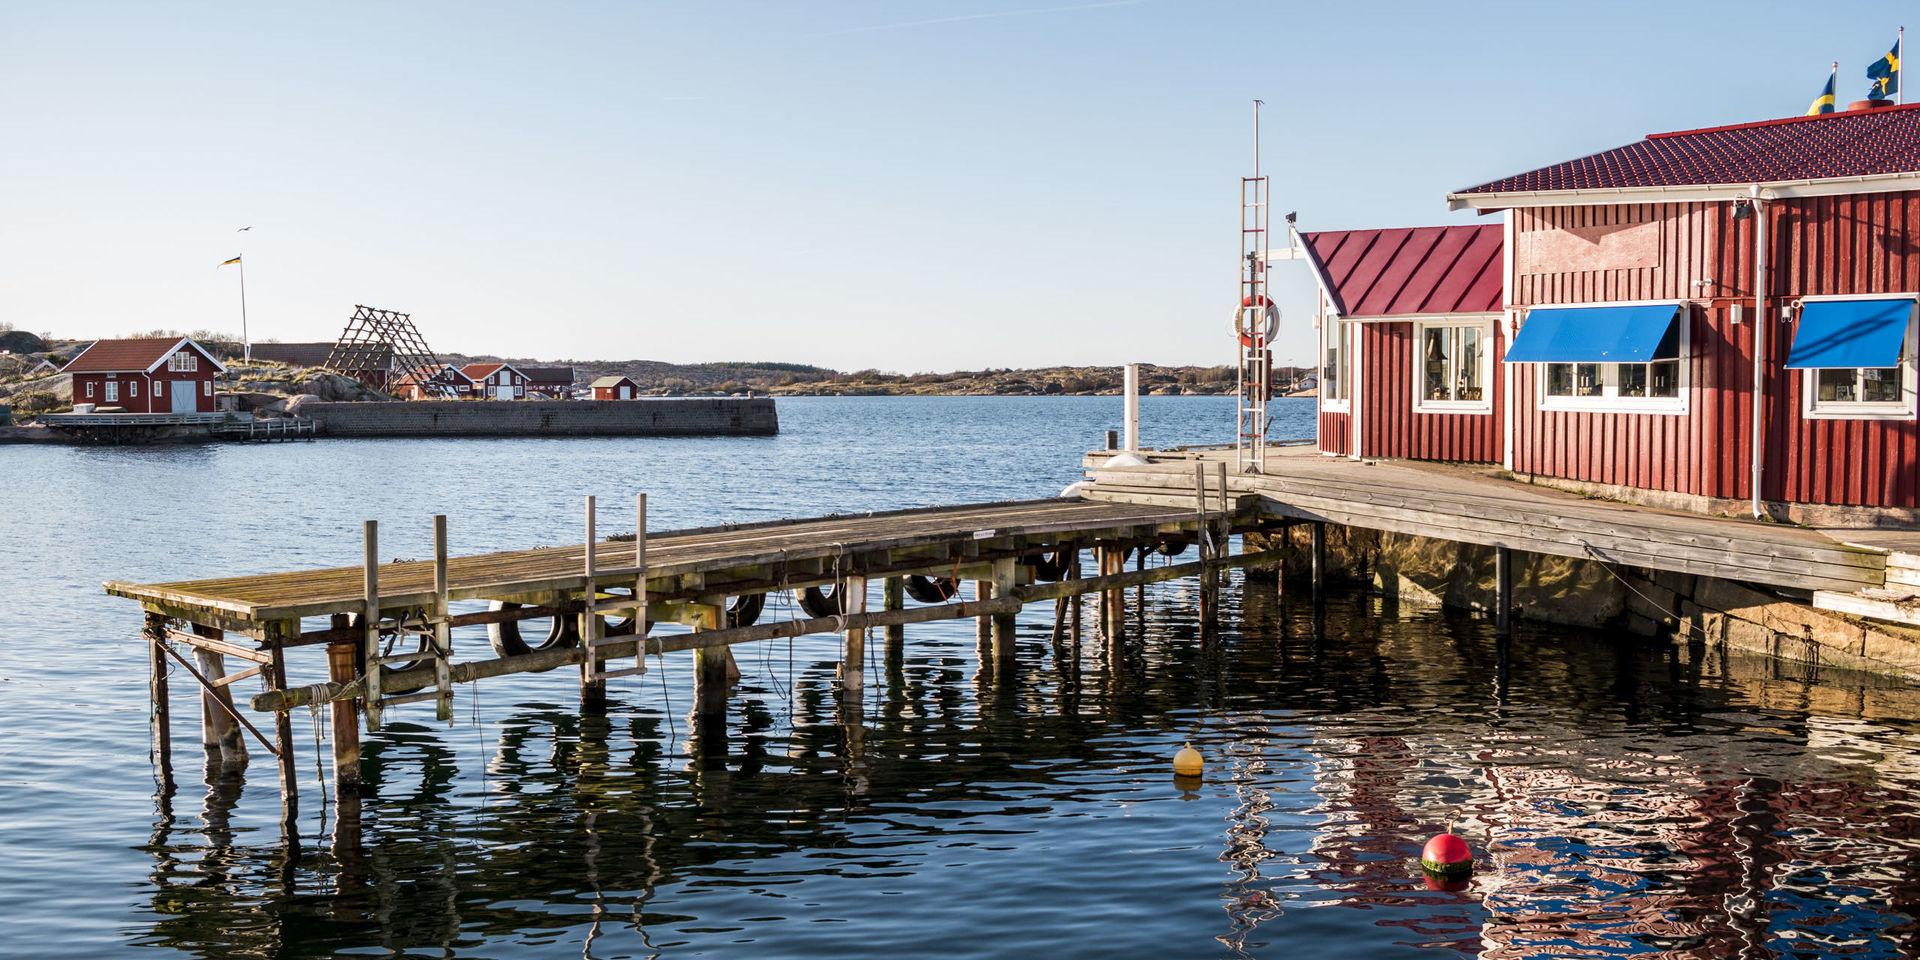 Svenska västkusten är ett bland de mest miljövänliga resmål man kan välja enligt New York Times.